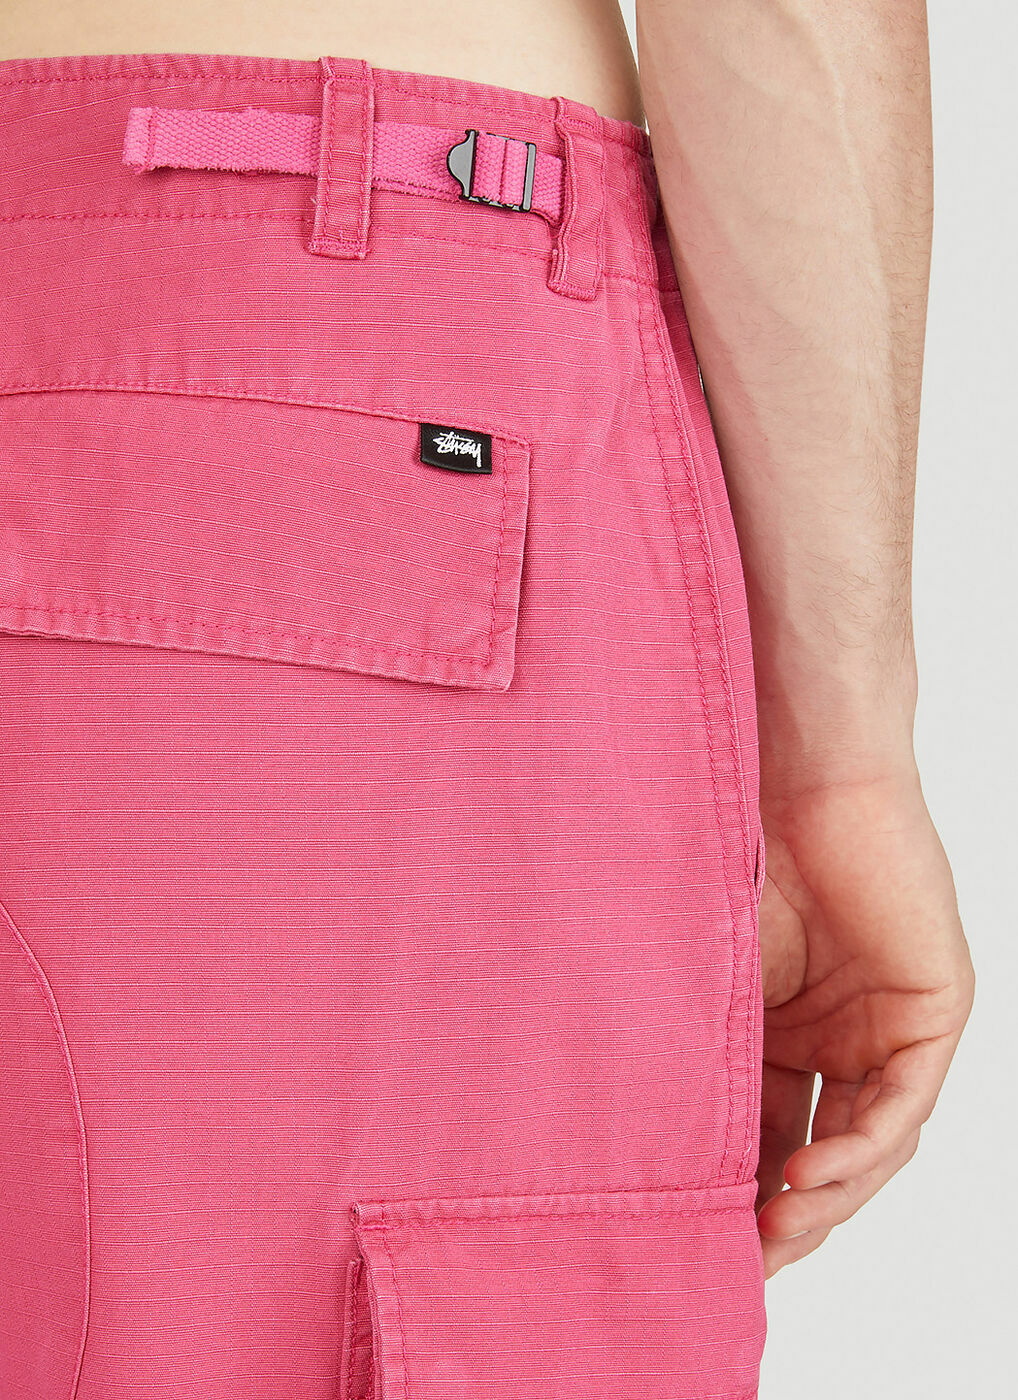 Surplus Cargo Pants in Pink Stussy